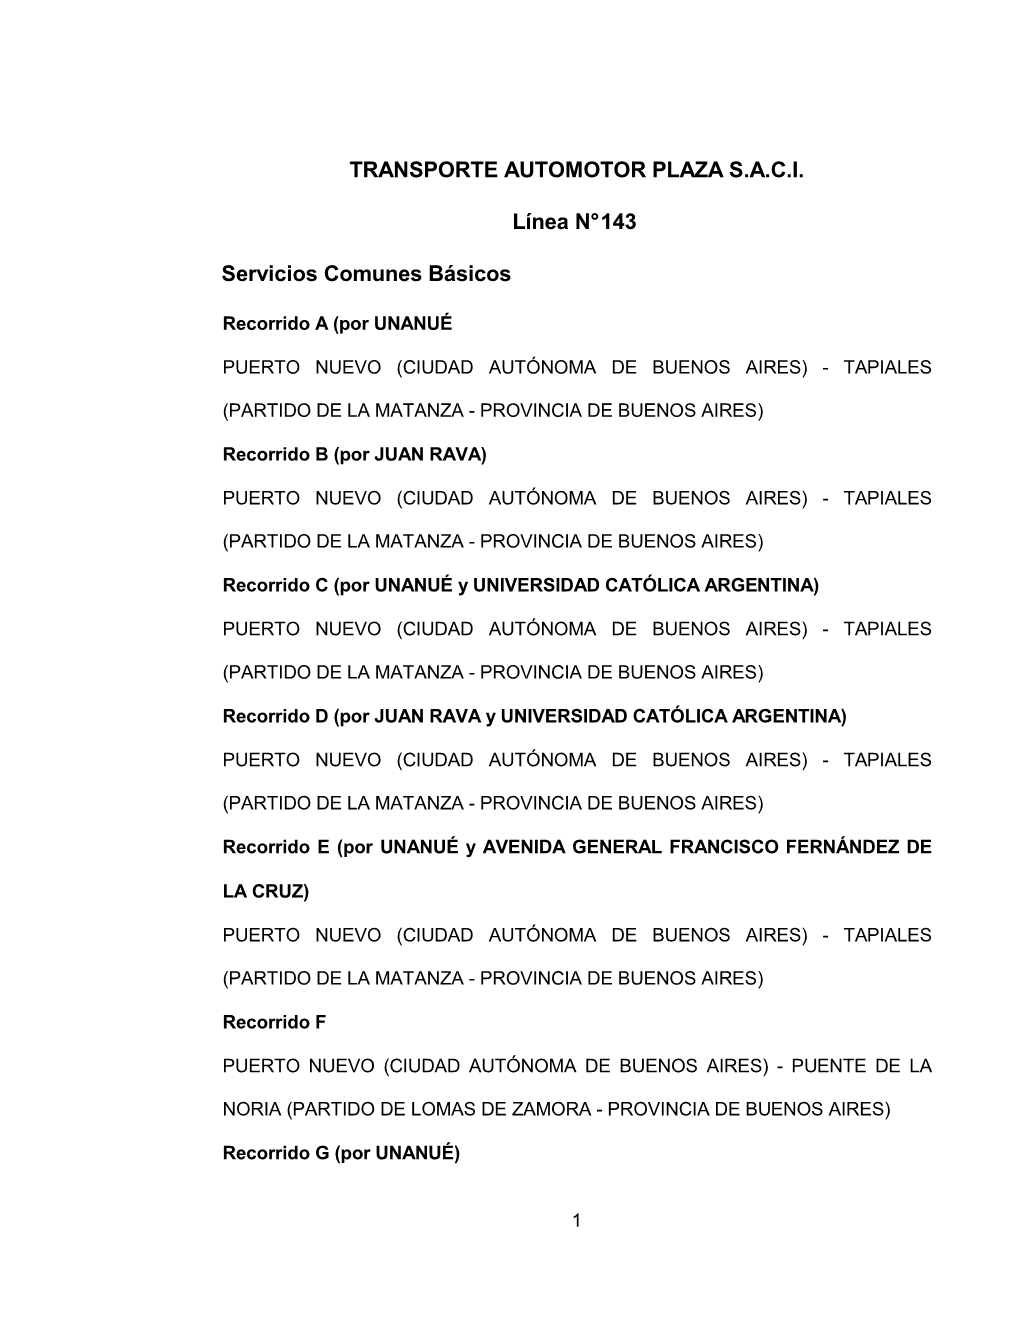 TRANSPORTE AUTOMOTOR PLAZA S.A.C.I. Línea N° 143 Servicios Comunes Básicos